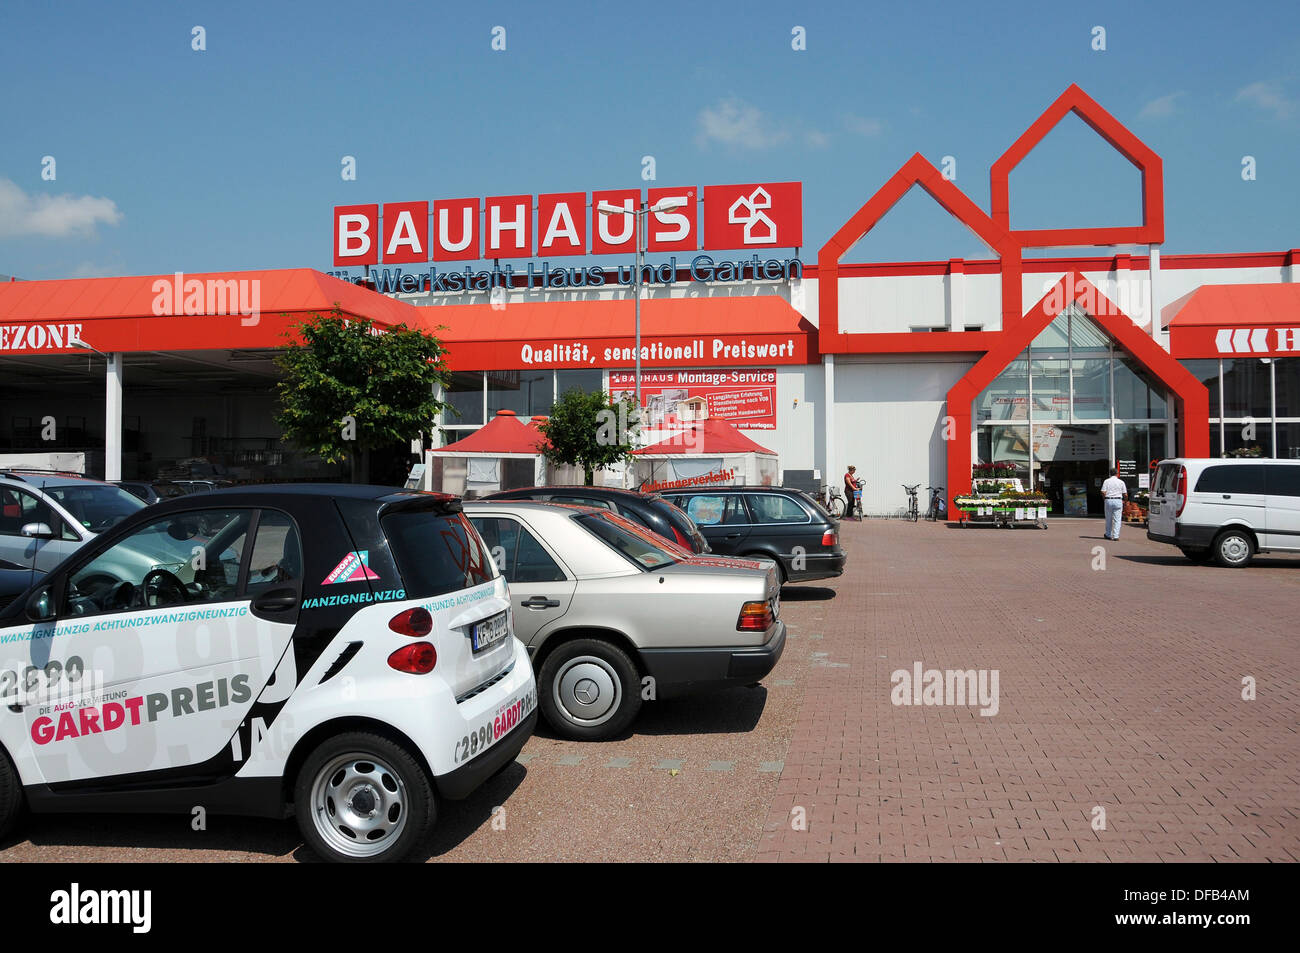 Bauhaus Baumarkt In Deutschland Stockfotografie Alamy